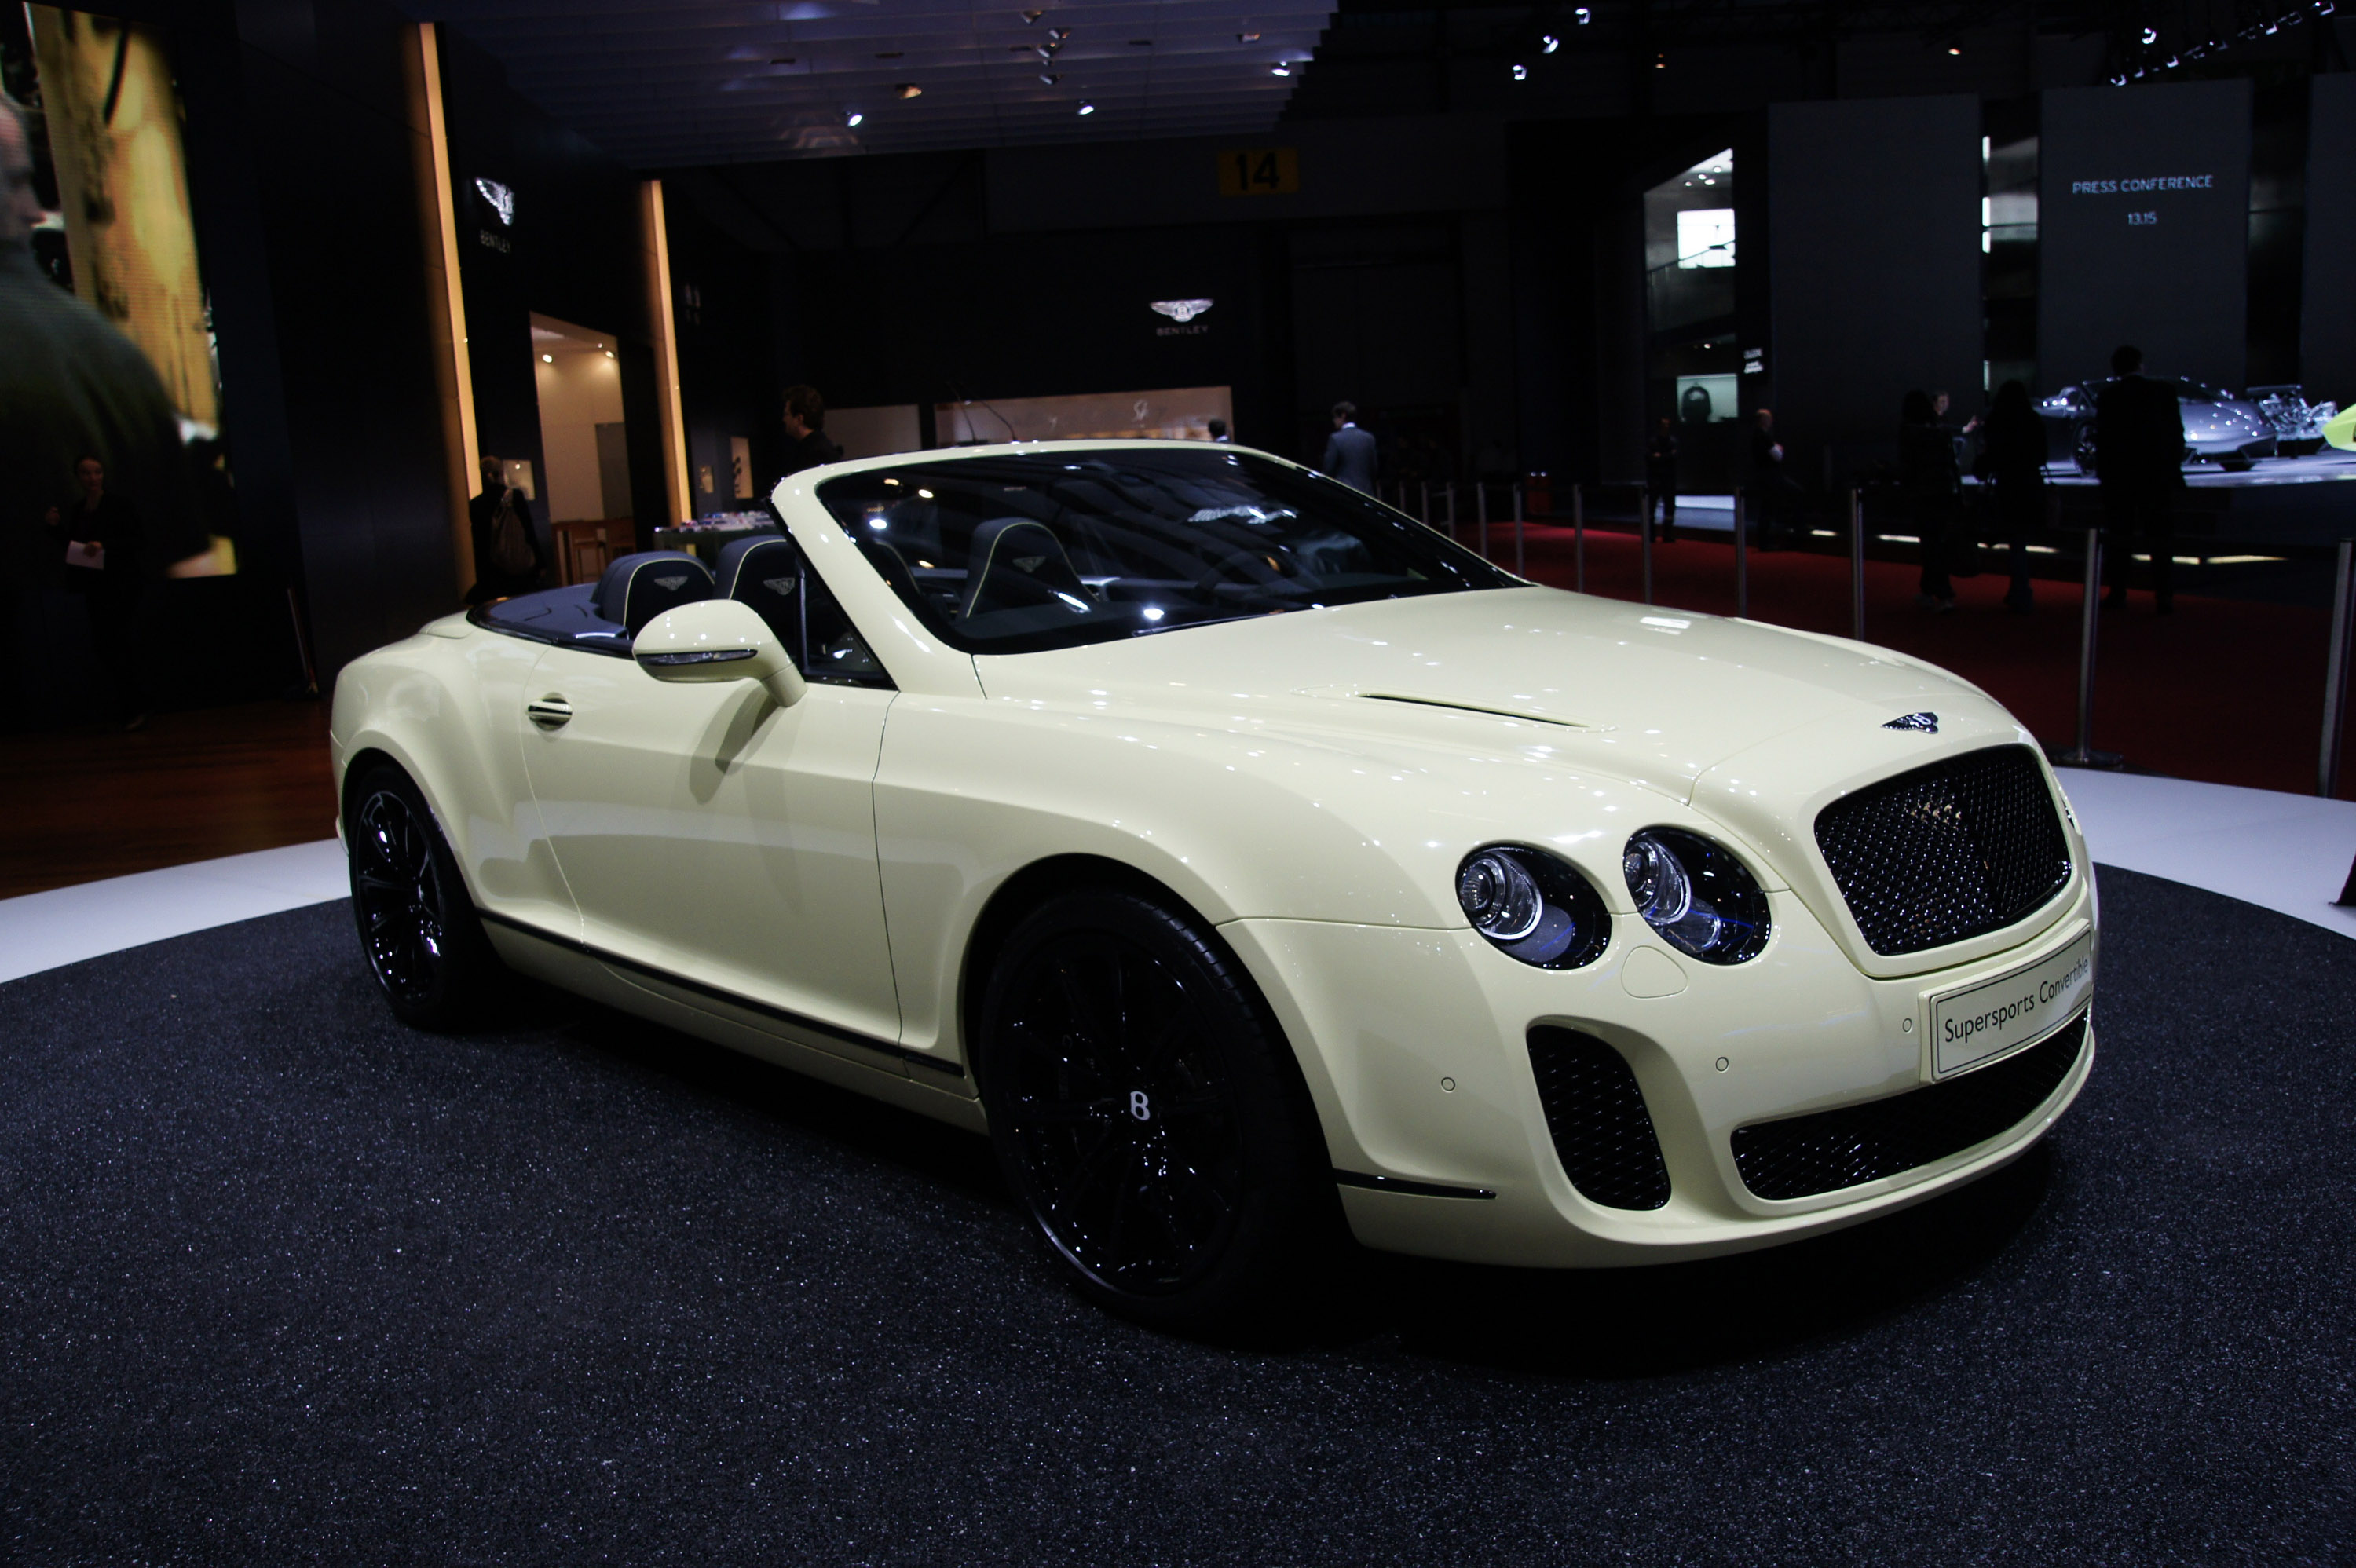 Bentley Supersports Convertible Geneva